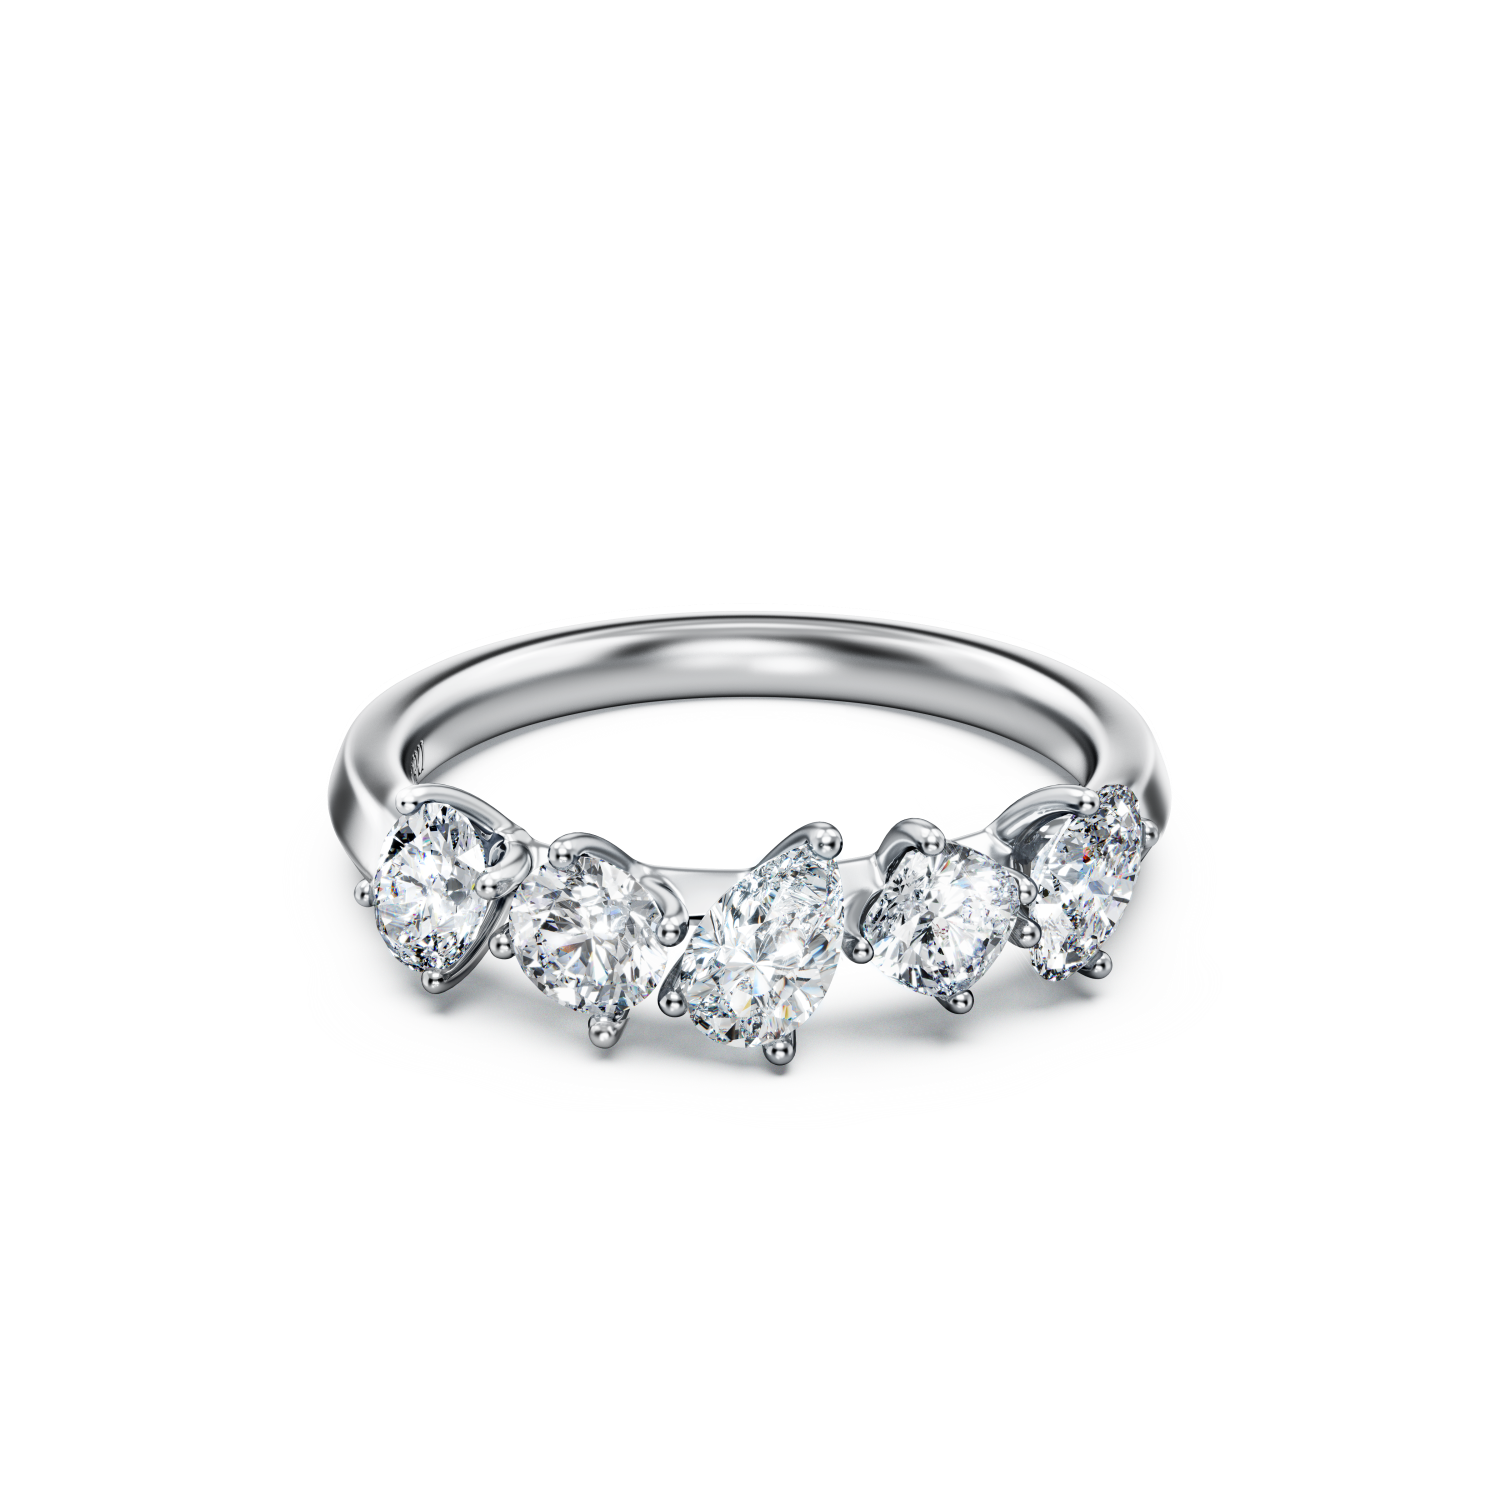 Swarovski - Anello Galaxy, Diamanti creati in laboratorio 1 ct tw, Oro bianco 18 K Ref. 5688848 - SWAROVSKI